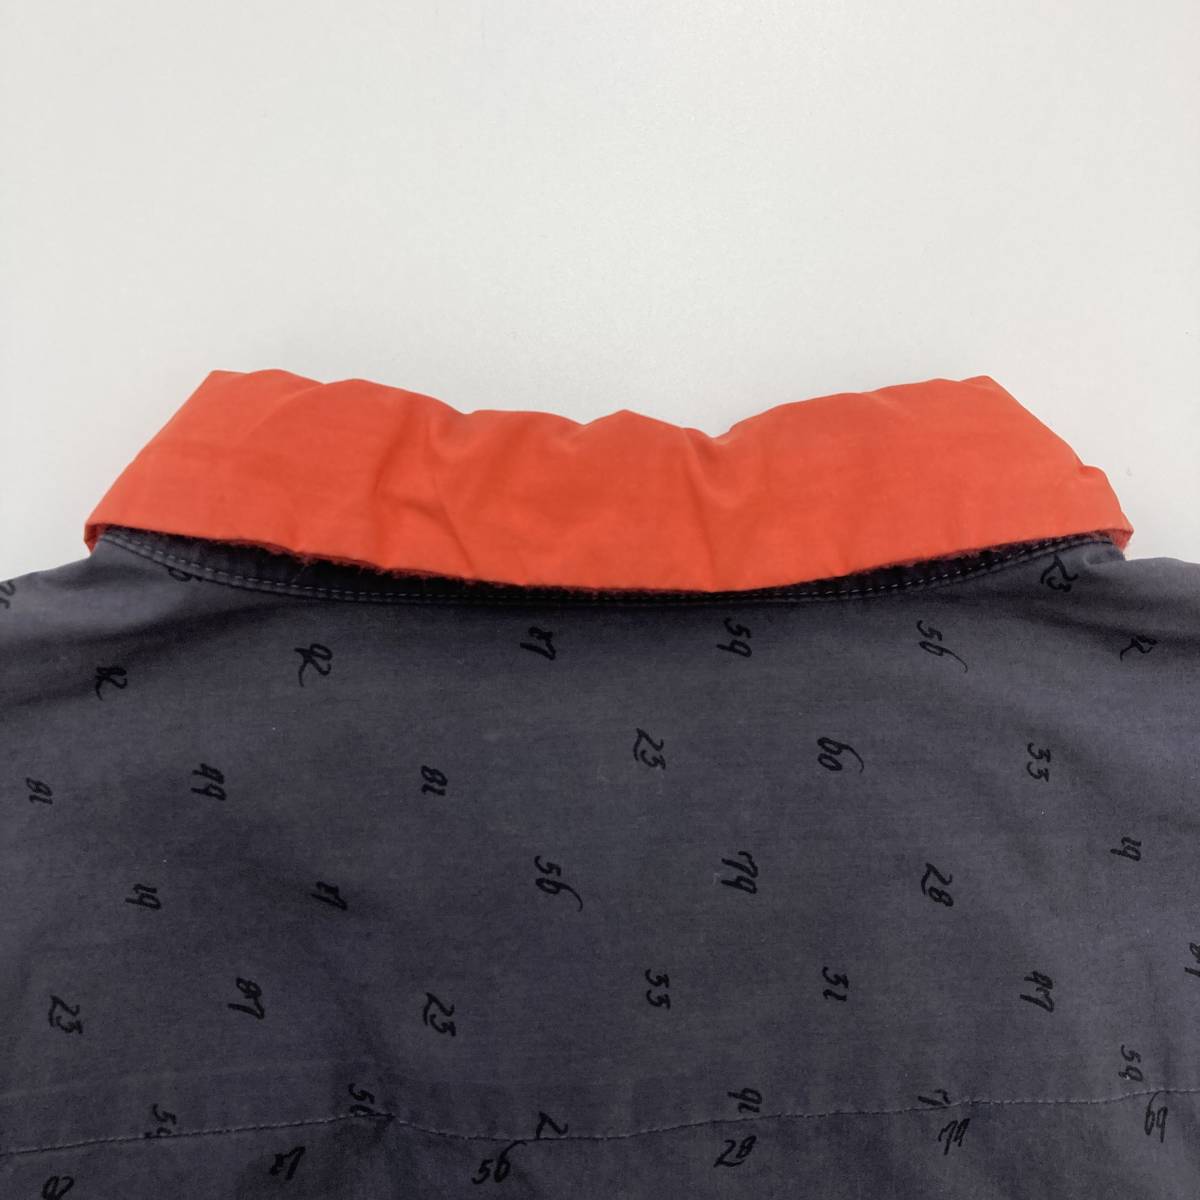 特価商品 2015AW アンダーカバー 2サイズ グレー 長袖シャツ 切替 襟